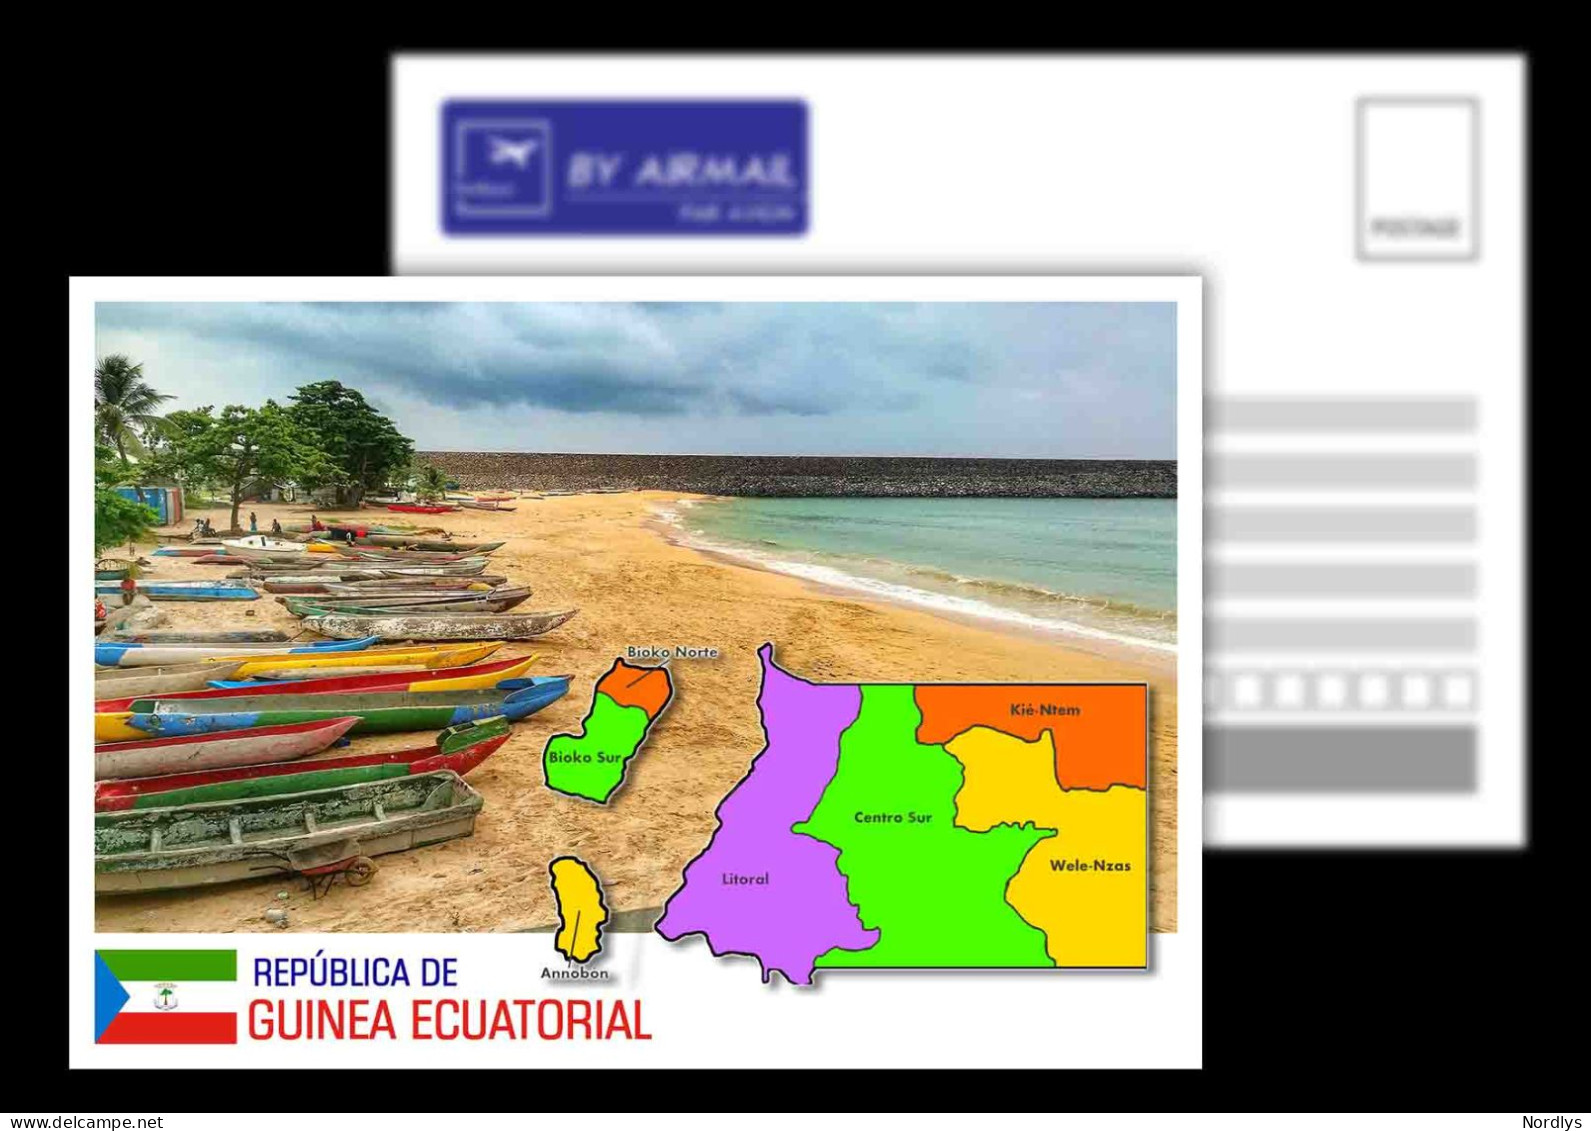 Equatorial Guinea / Postcard / View Card/ Map Card - Guinea Ecuatorial